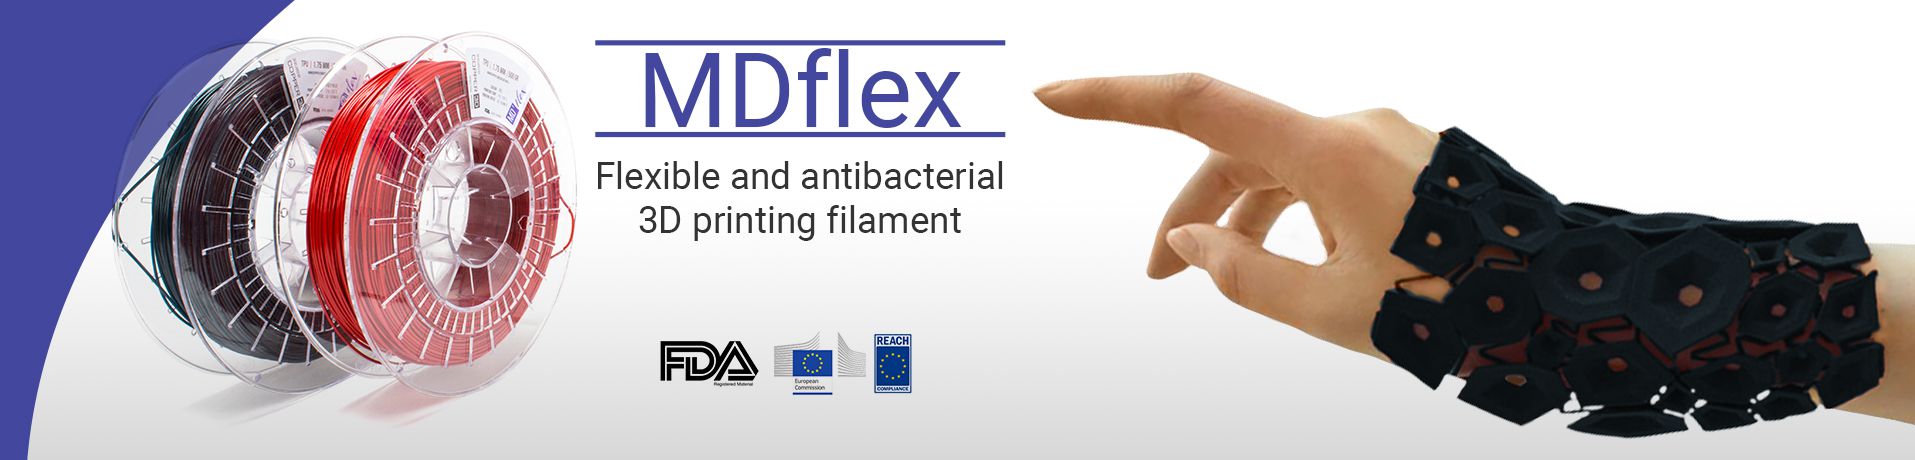 抗菌作用フィラメント『MD Flex』販売開始